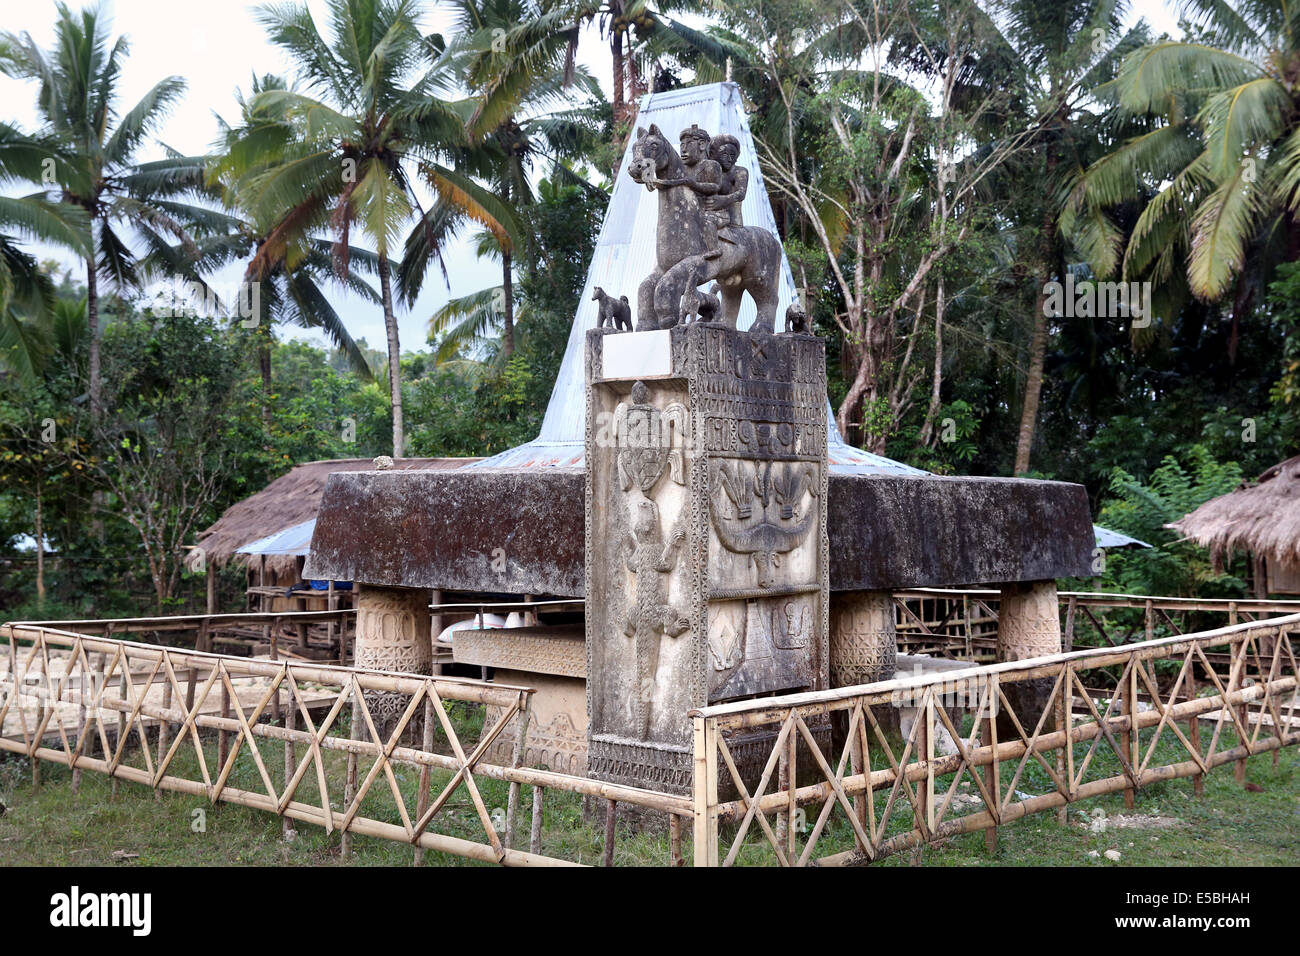 Grave la dalle à totem, un village traditionnel de l'île de Sumba, Indonésie, Asie Banque D'Images